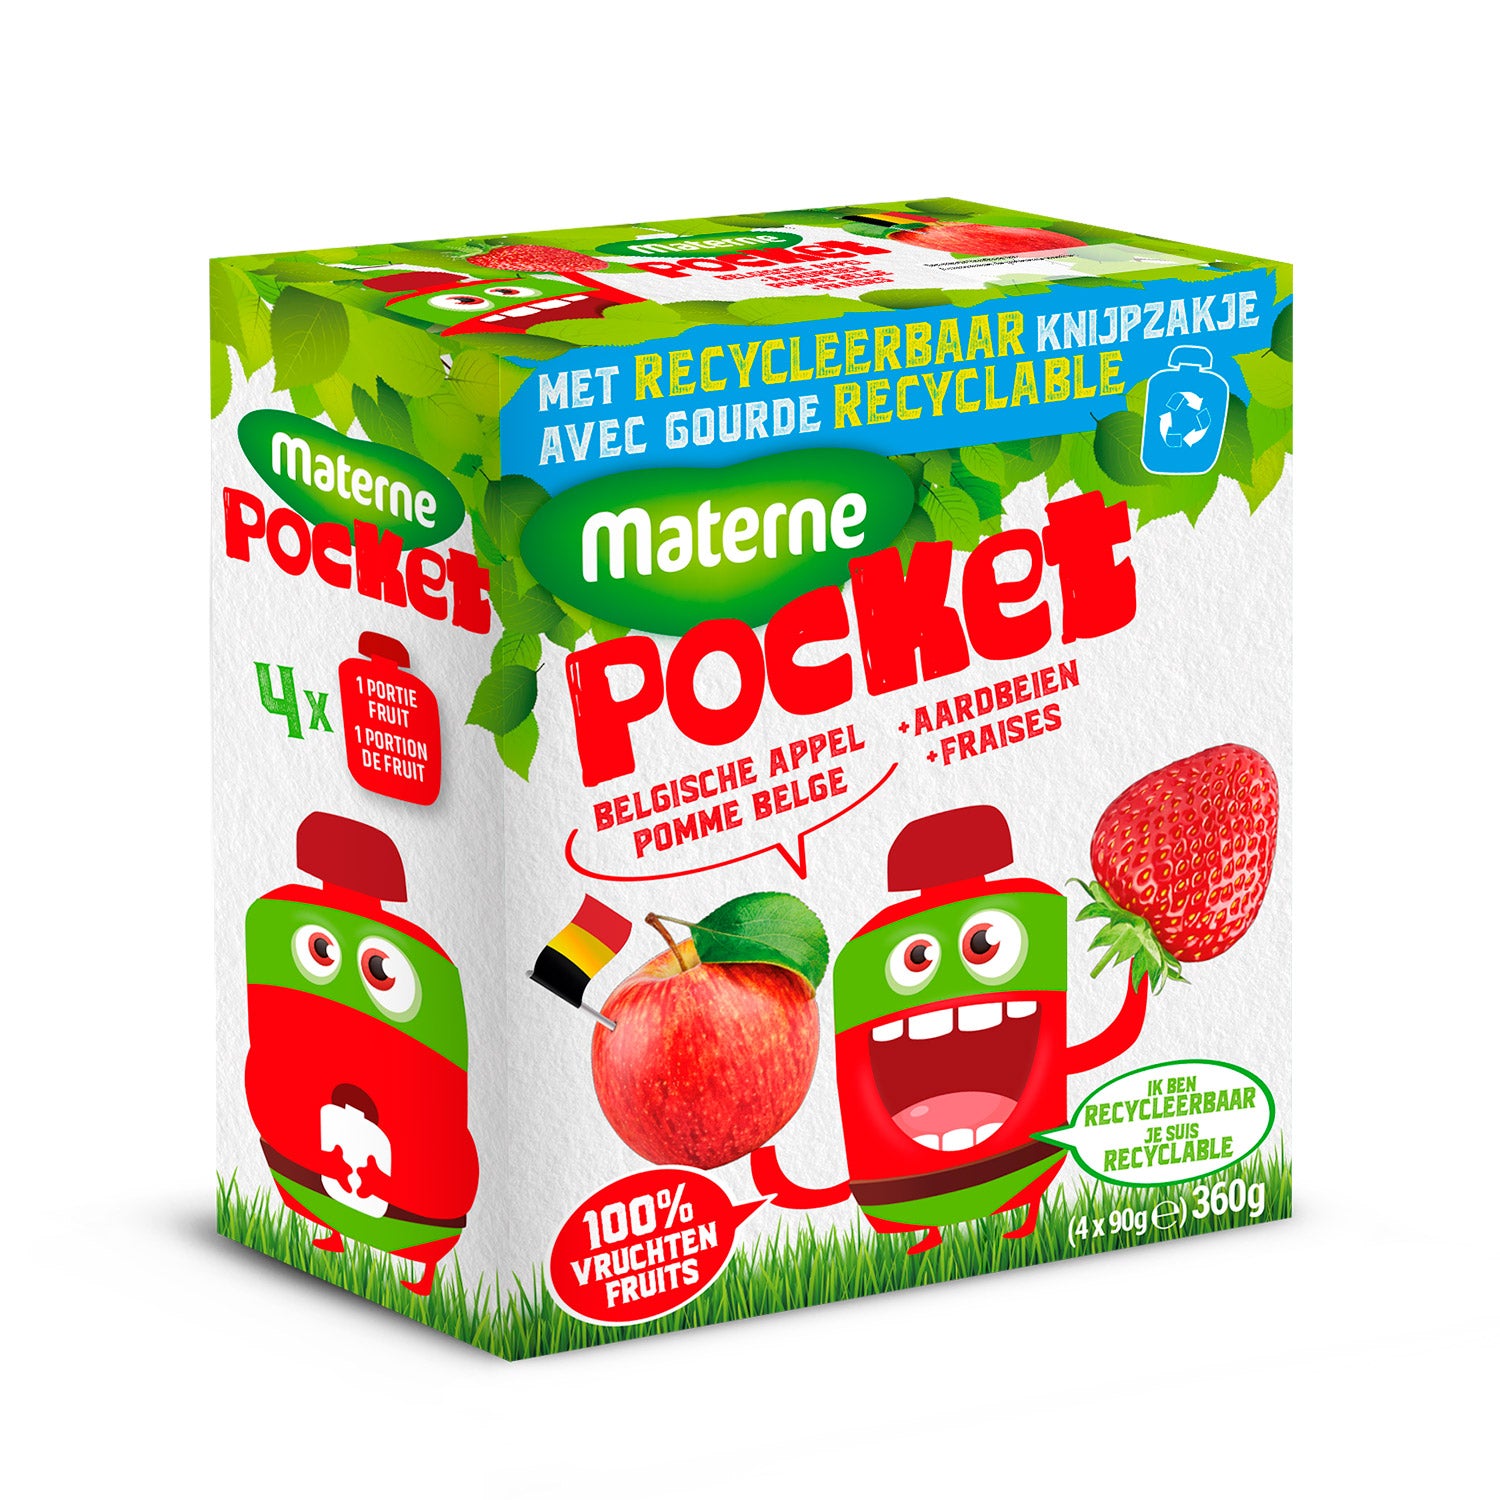 Materne Pocket<br>Pomme Belge-Fraise